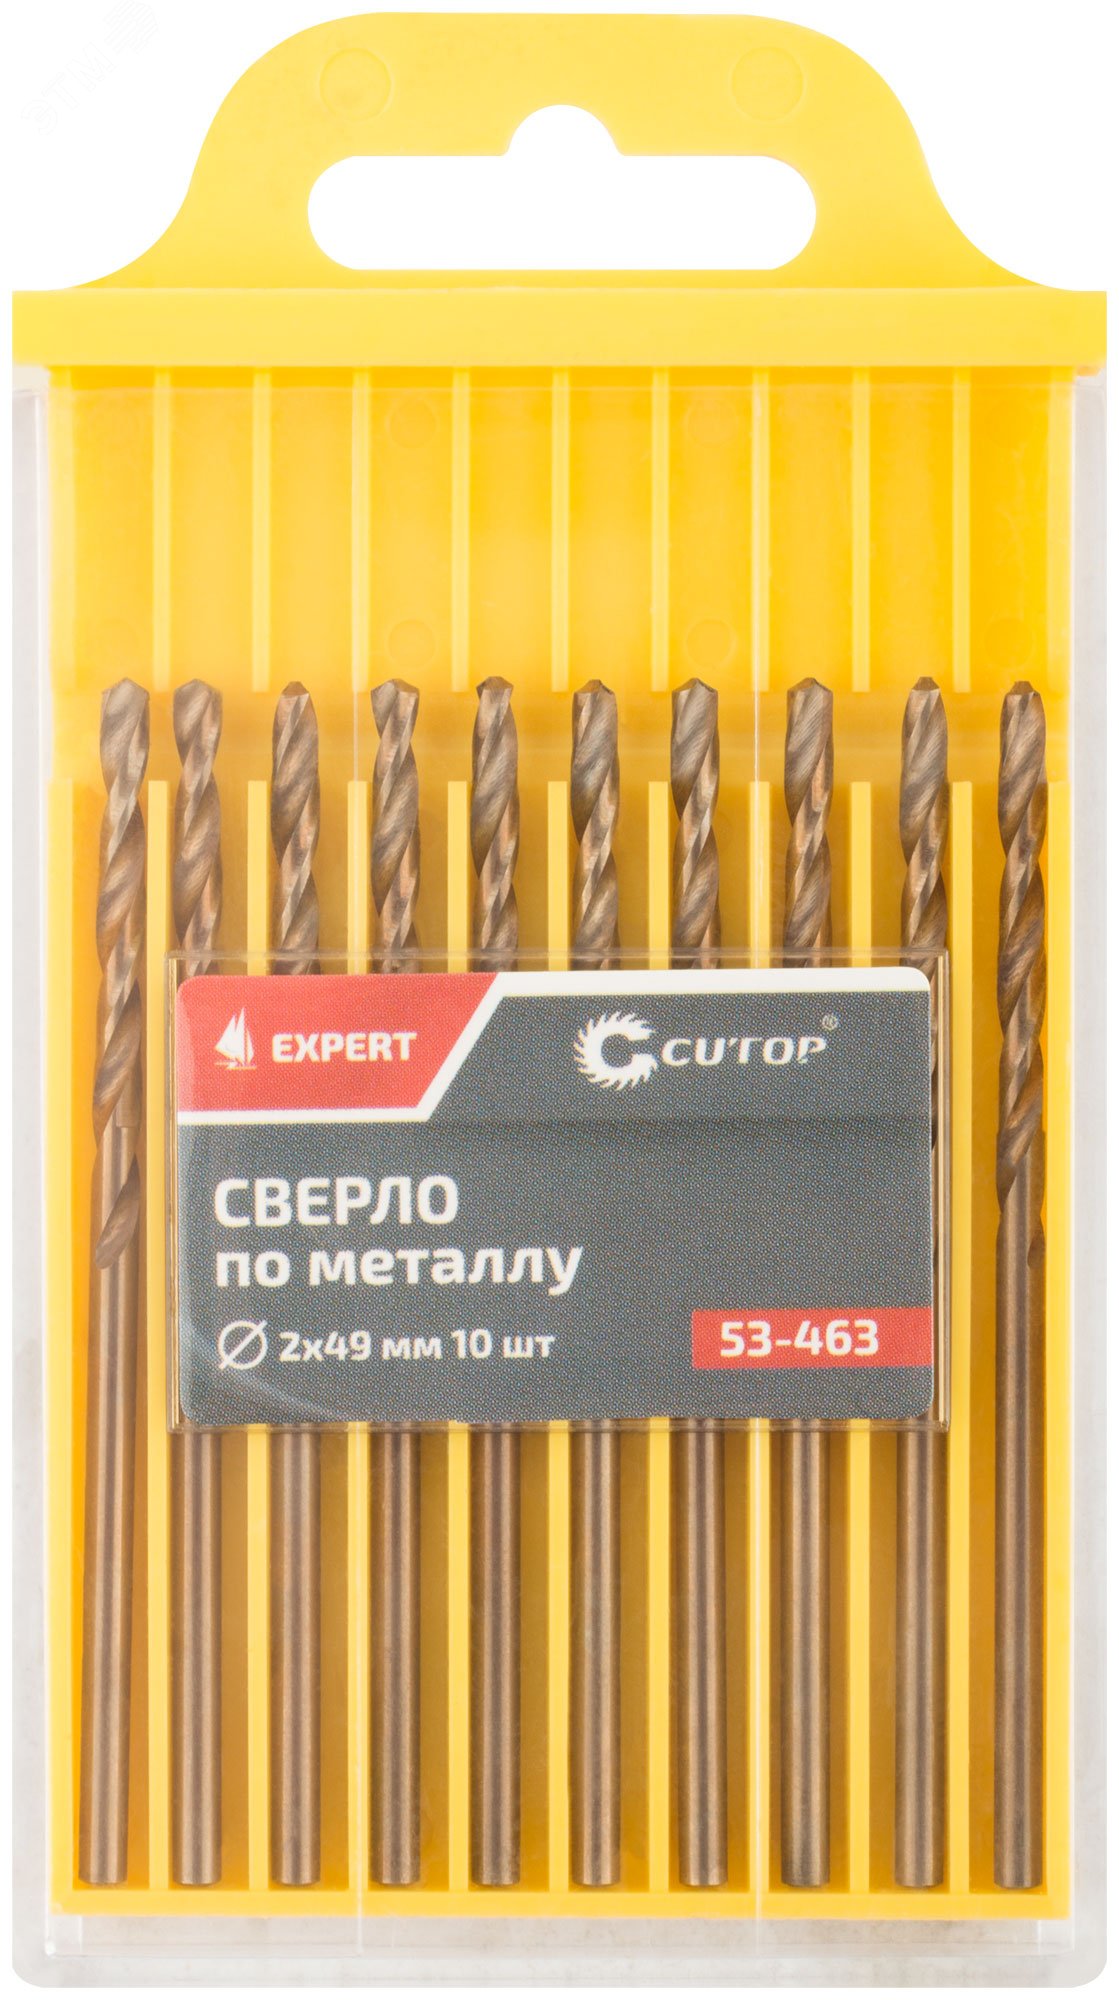 Сверло по металлу Cutop EXPERT, 2х49 мм (10 шт) 53-463 CUTOP - превью 3